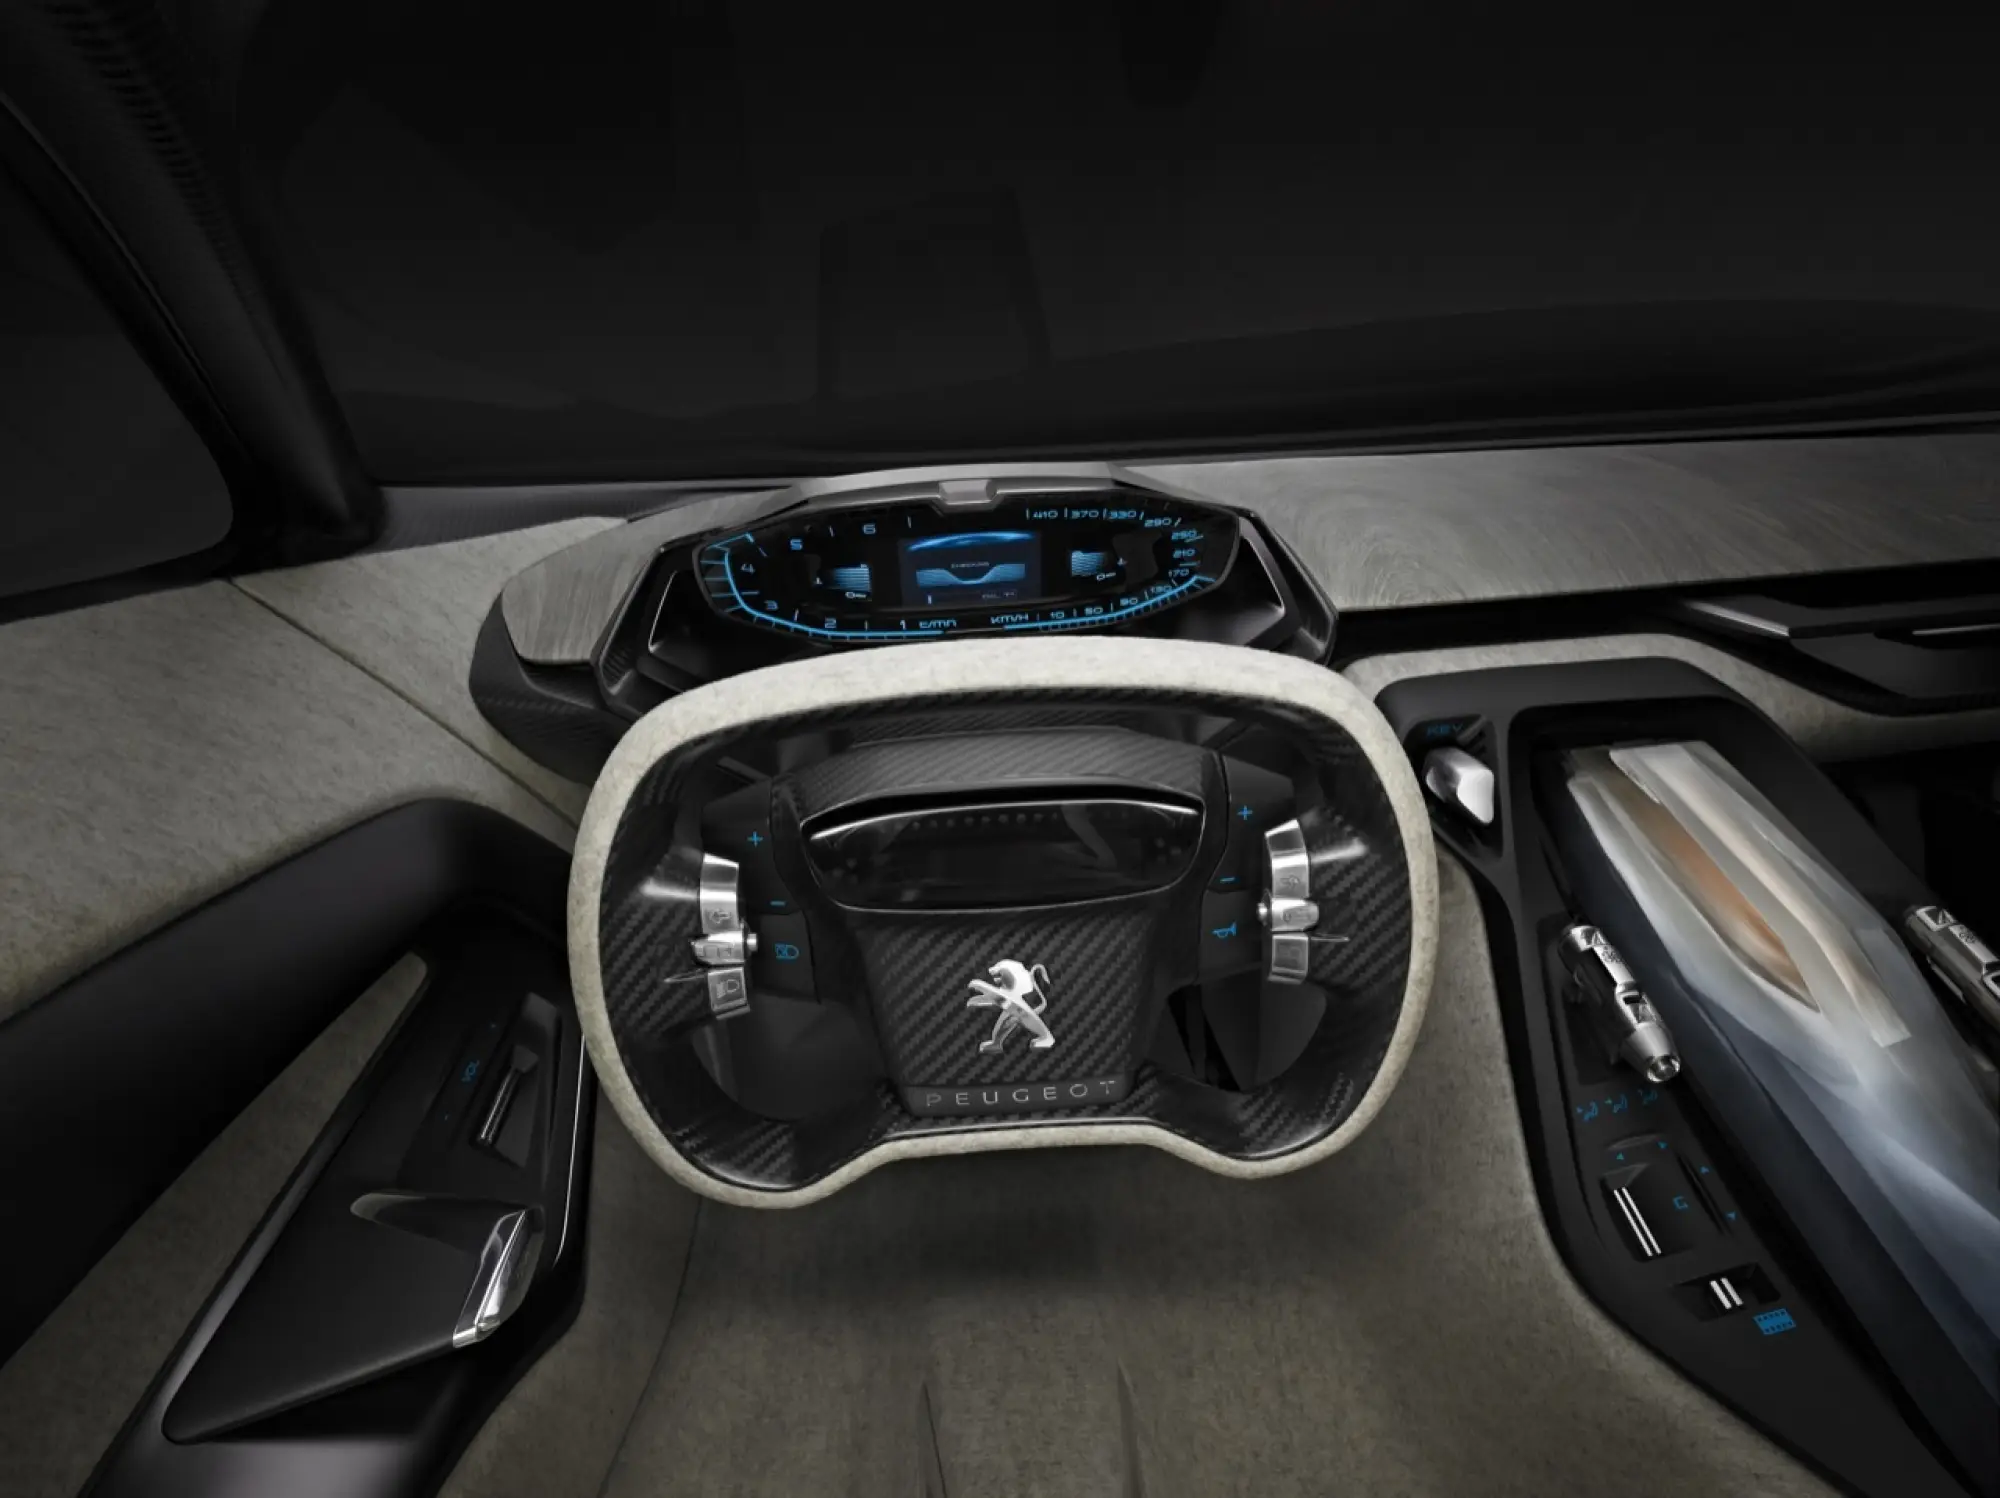 Peugeot - diverse concept car  - 8